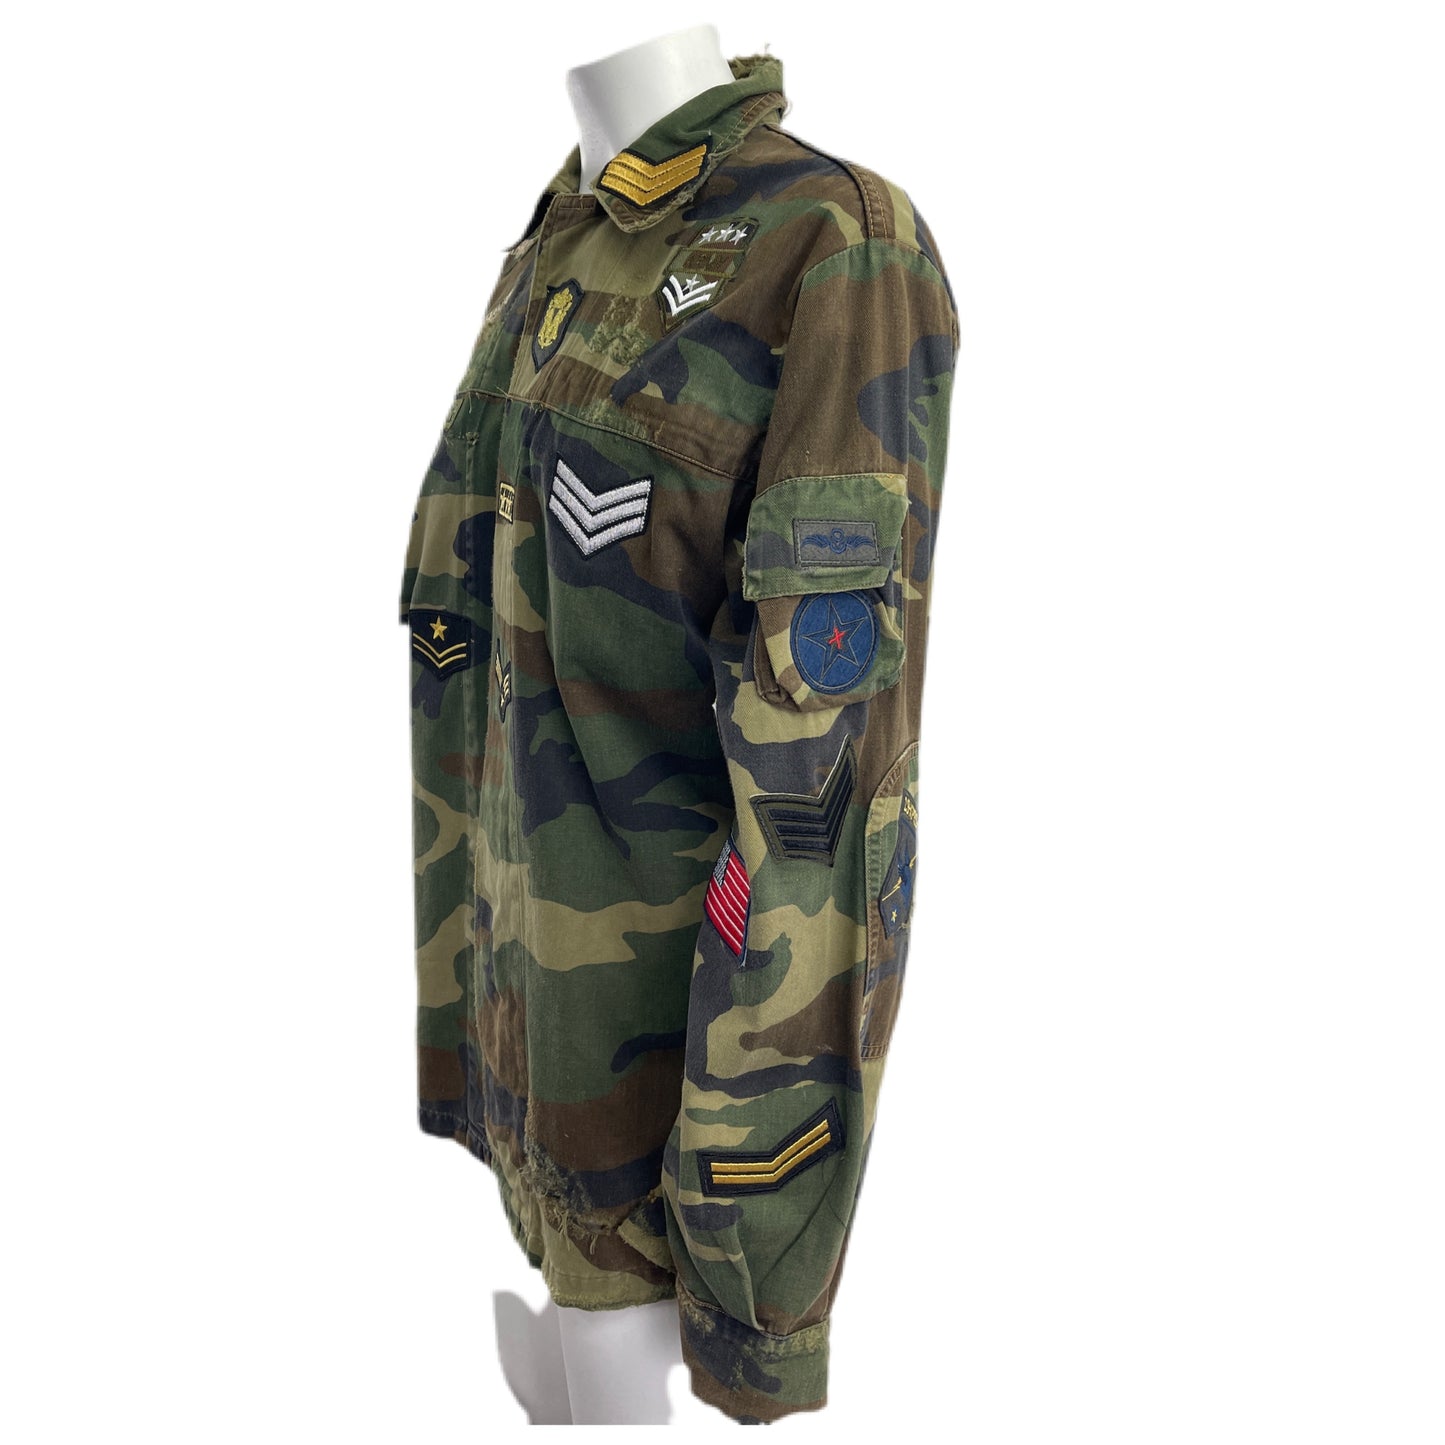 Camouflage-Militärhemd mit Militär-Patches, Retro-Drachen-Patch. L